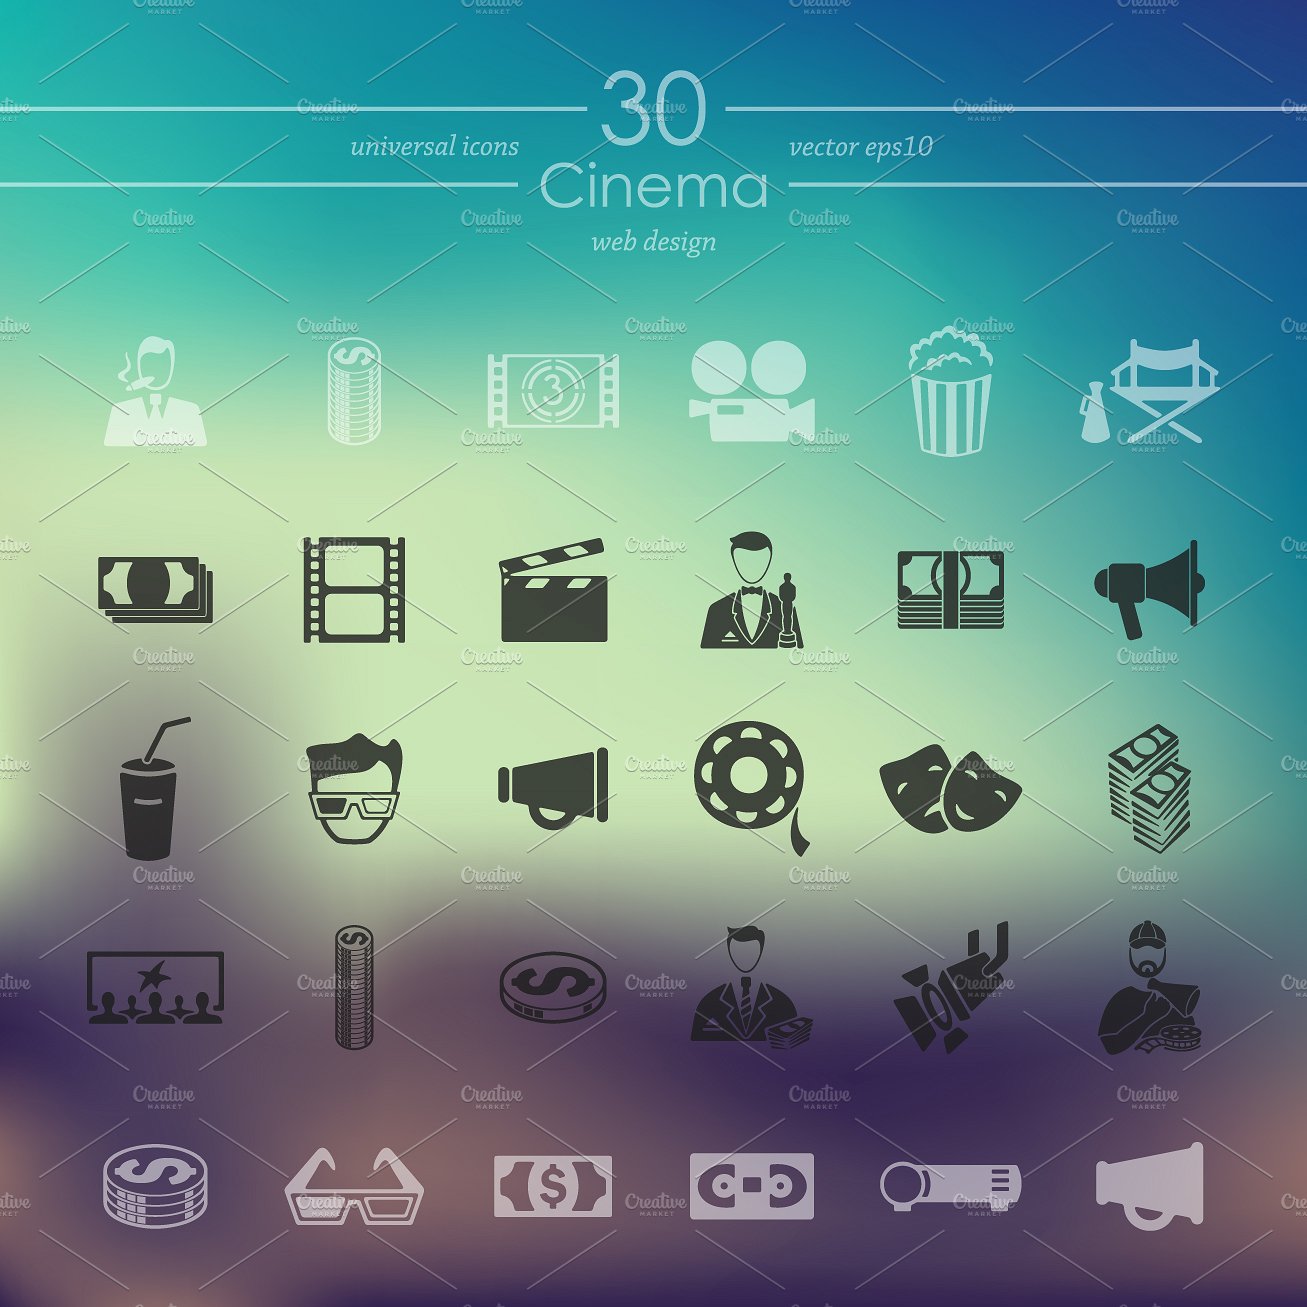 30 CINEMA icons